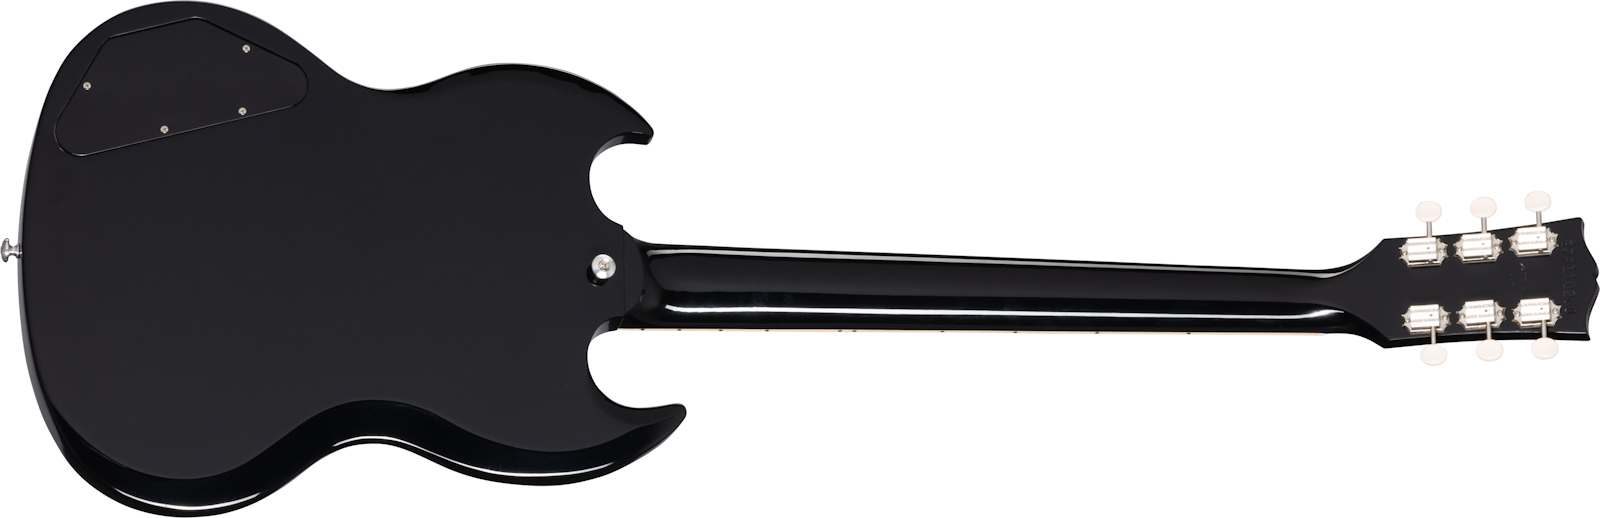 Gibson Sg Special Original 2021 2p90 Ht Rw - Ebony - Guitare Électrique Double Cut - Variation 1